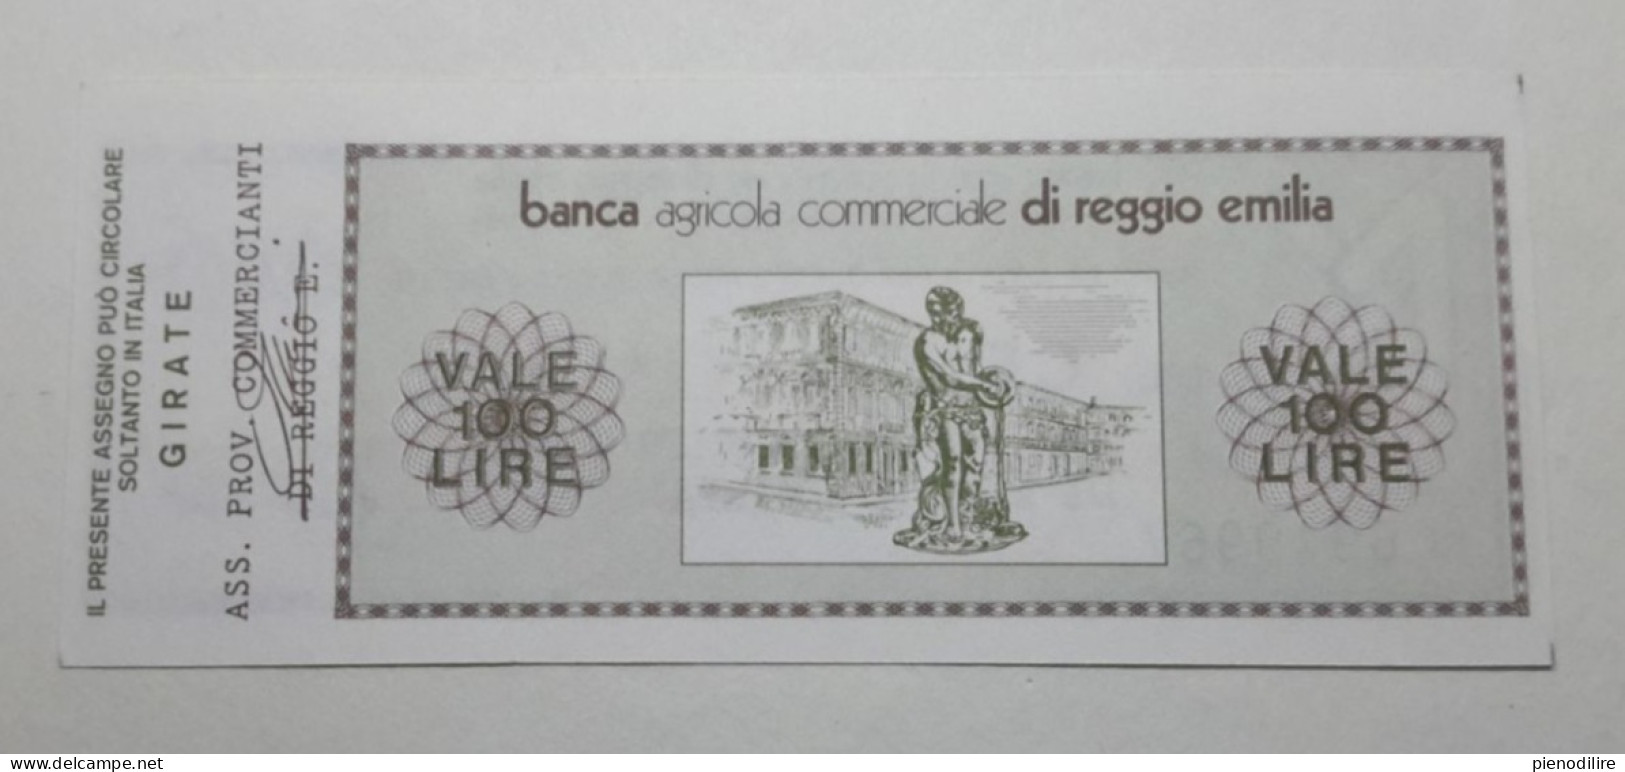 BANCA AGRICOLA COMMERCIALE DI REGGIO EMILIA, 100 Lire 30.09.1977 Ass. Prov. Commercianti (A1.45) - [10] Checks And Mini-checks